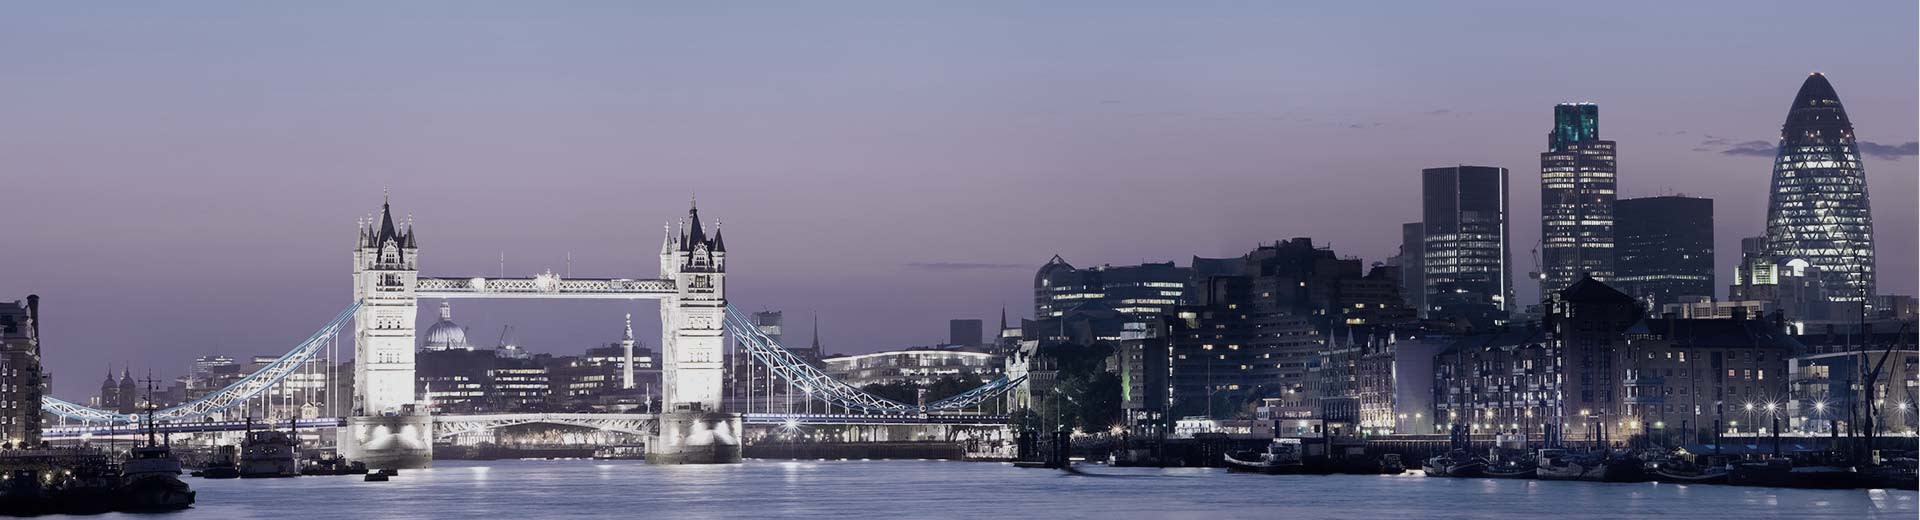 London Bridge s'étend sur la Tamise la nuit, éclairant le ciel.